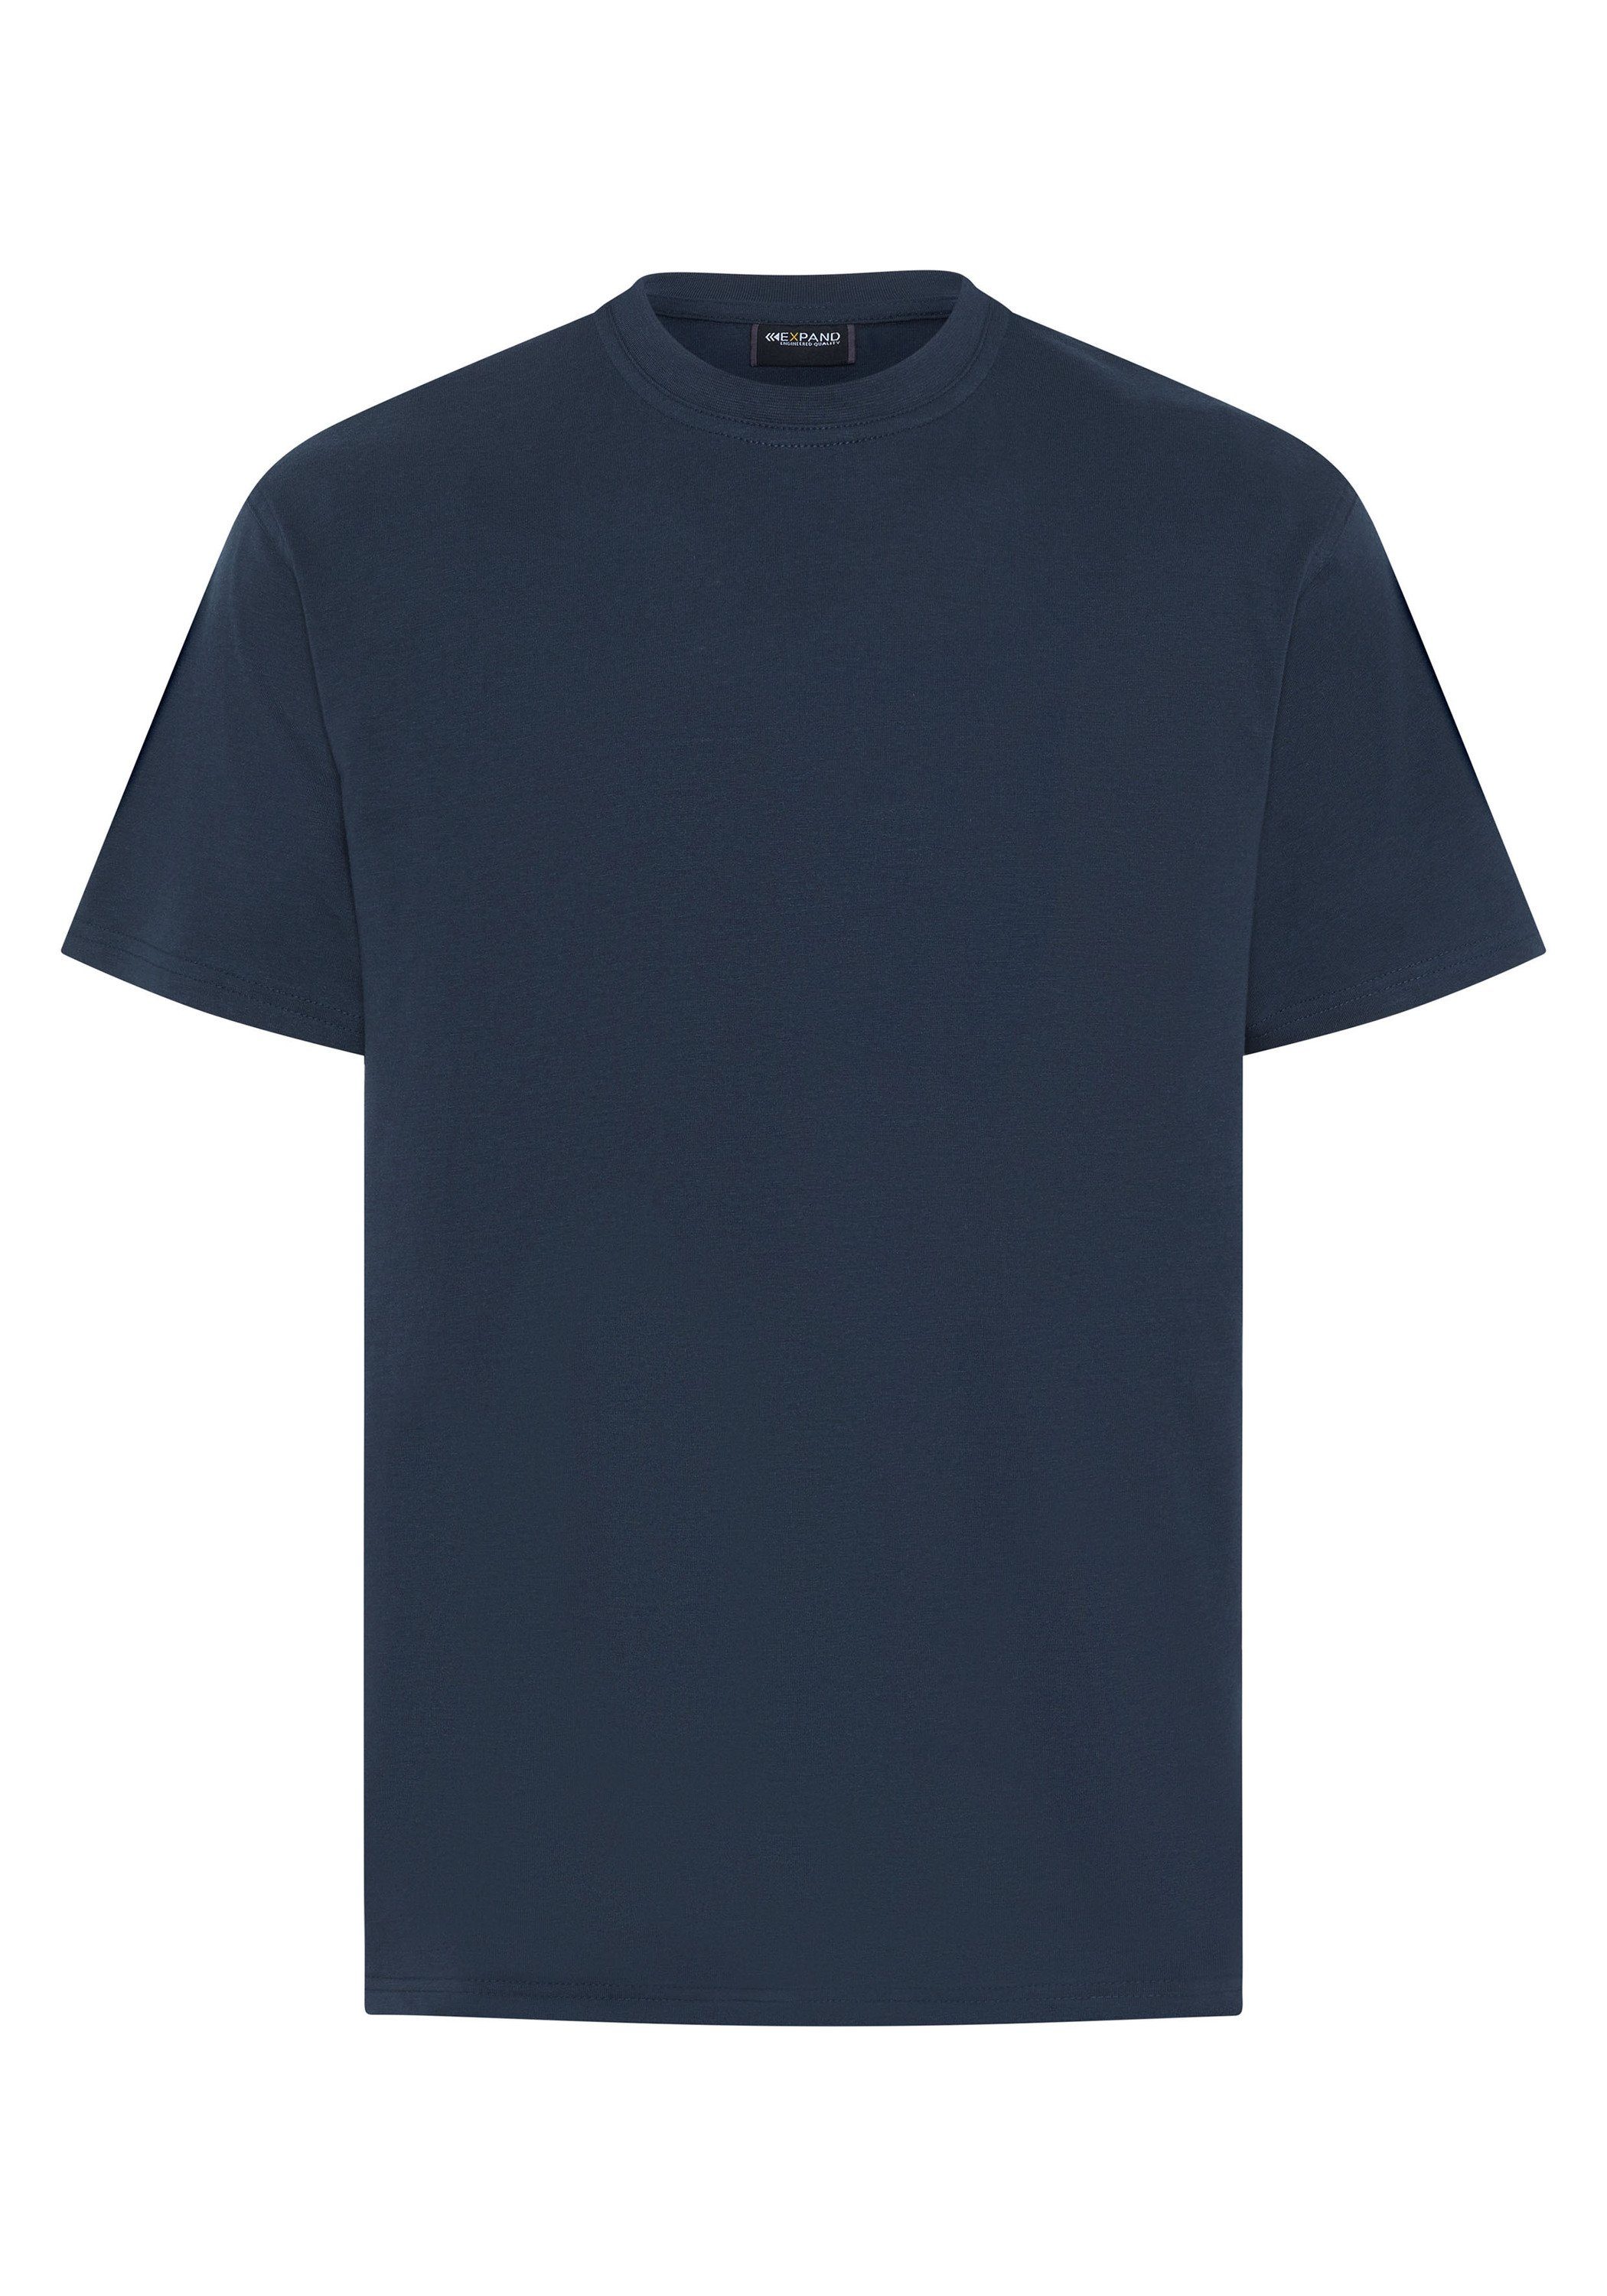 einlaufvorbehandelt marine T-Shirt Expand